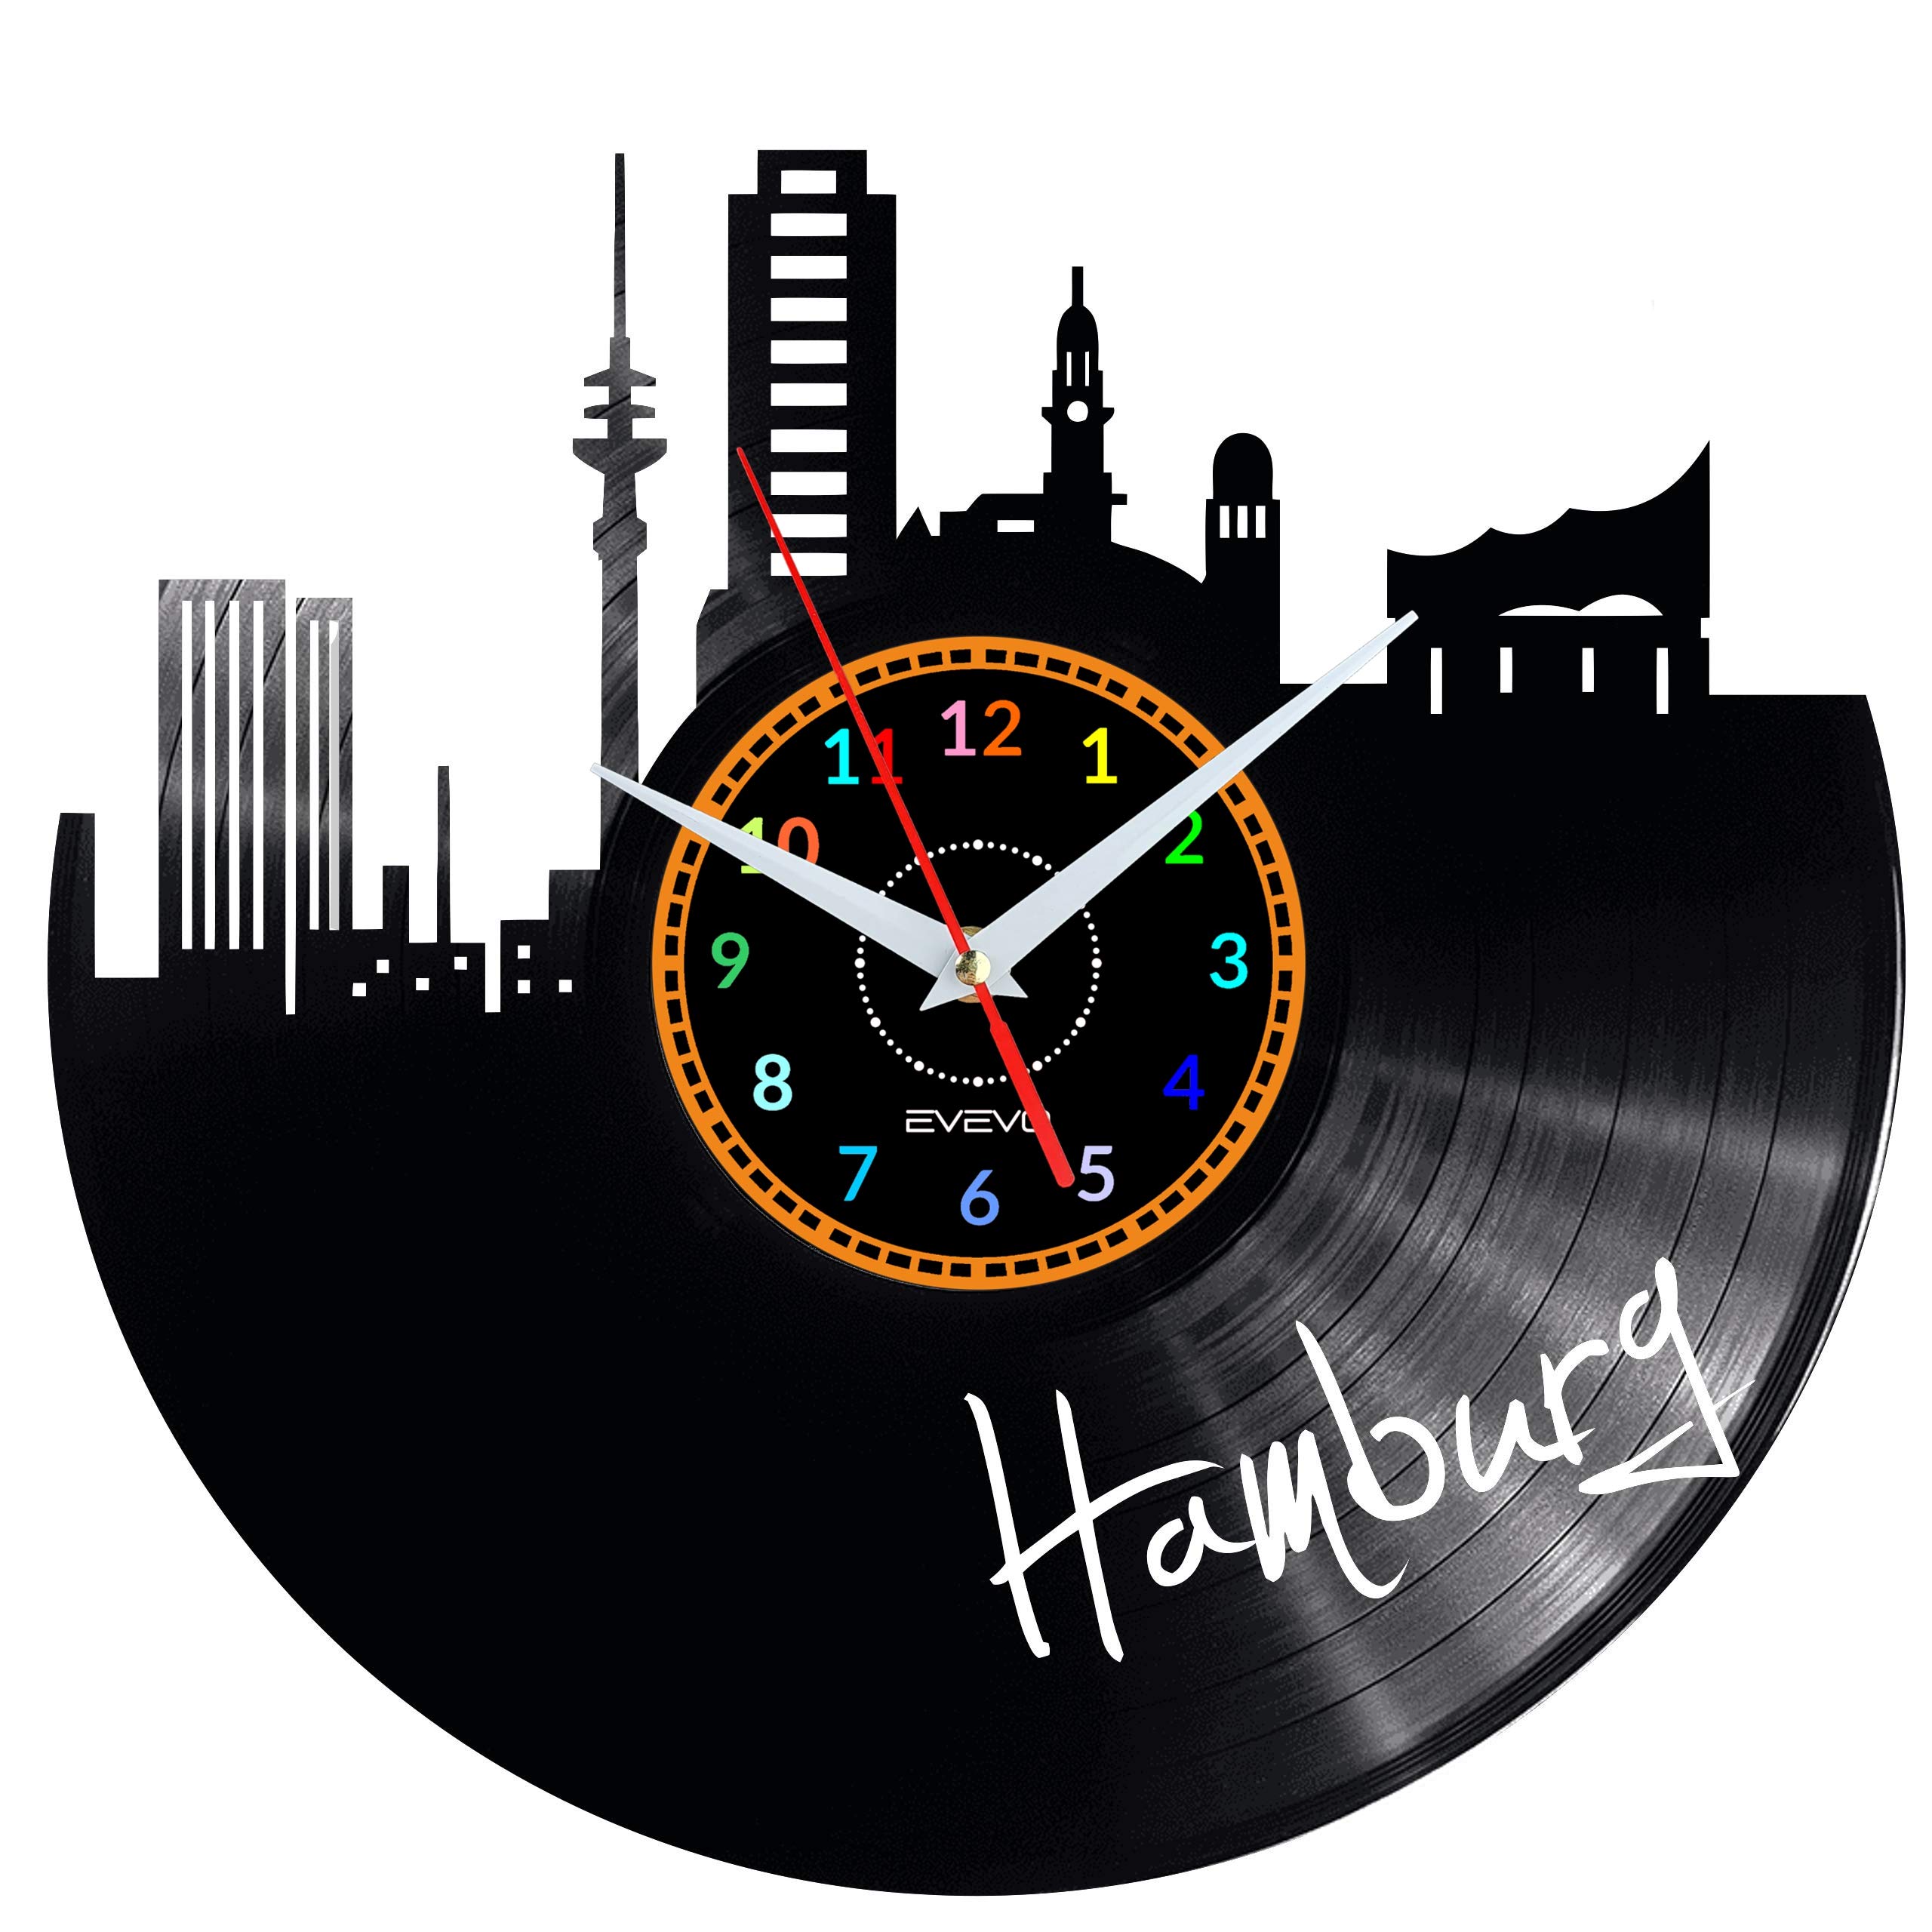 EVEVO Hamburg Wanduhr Vinyl Schallplatte Retro-Uhr groß Uhren Style Raum Home Dekorationen Tolles Geschenk Wanduhr Hamburg